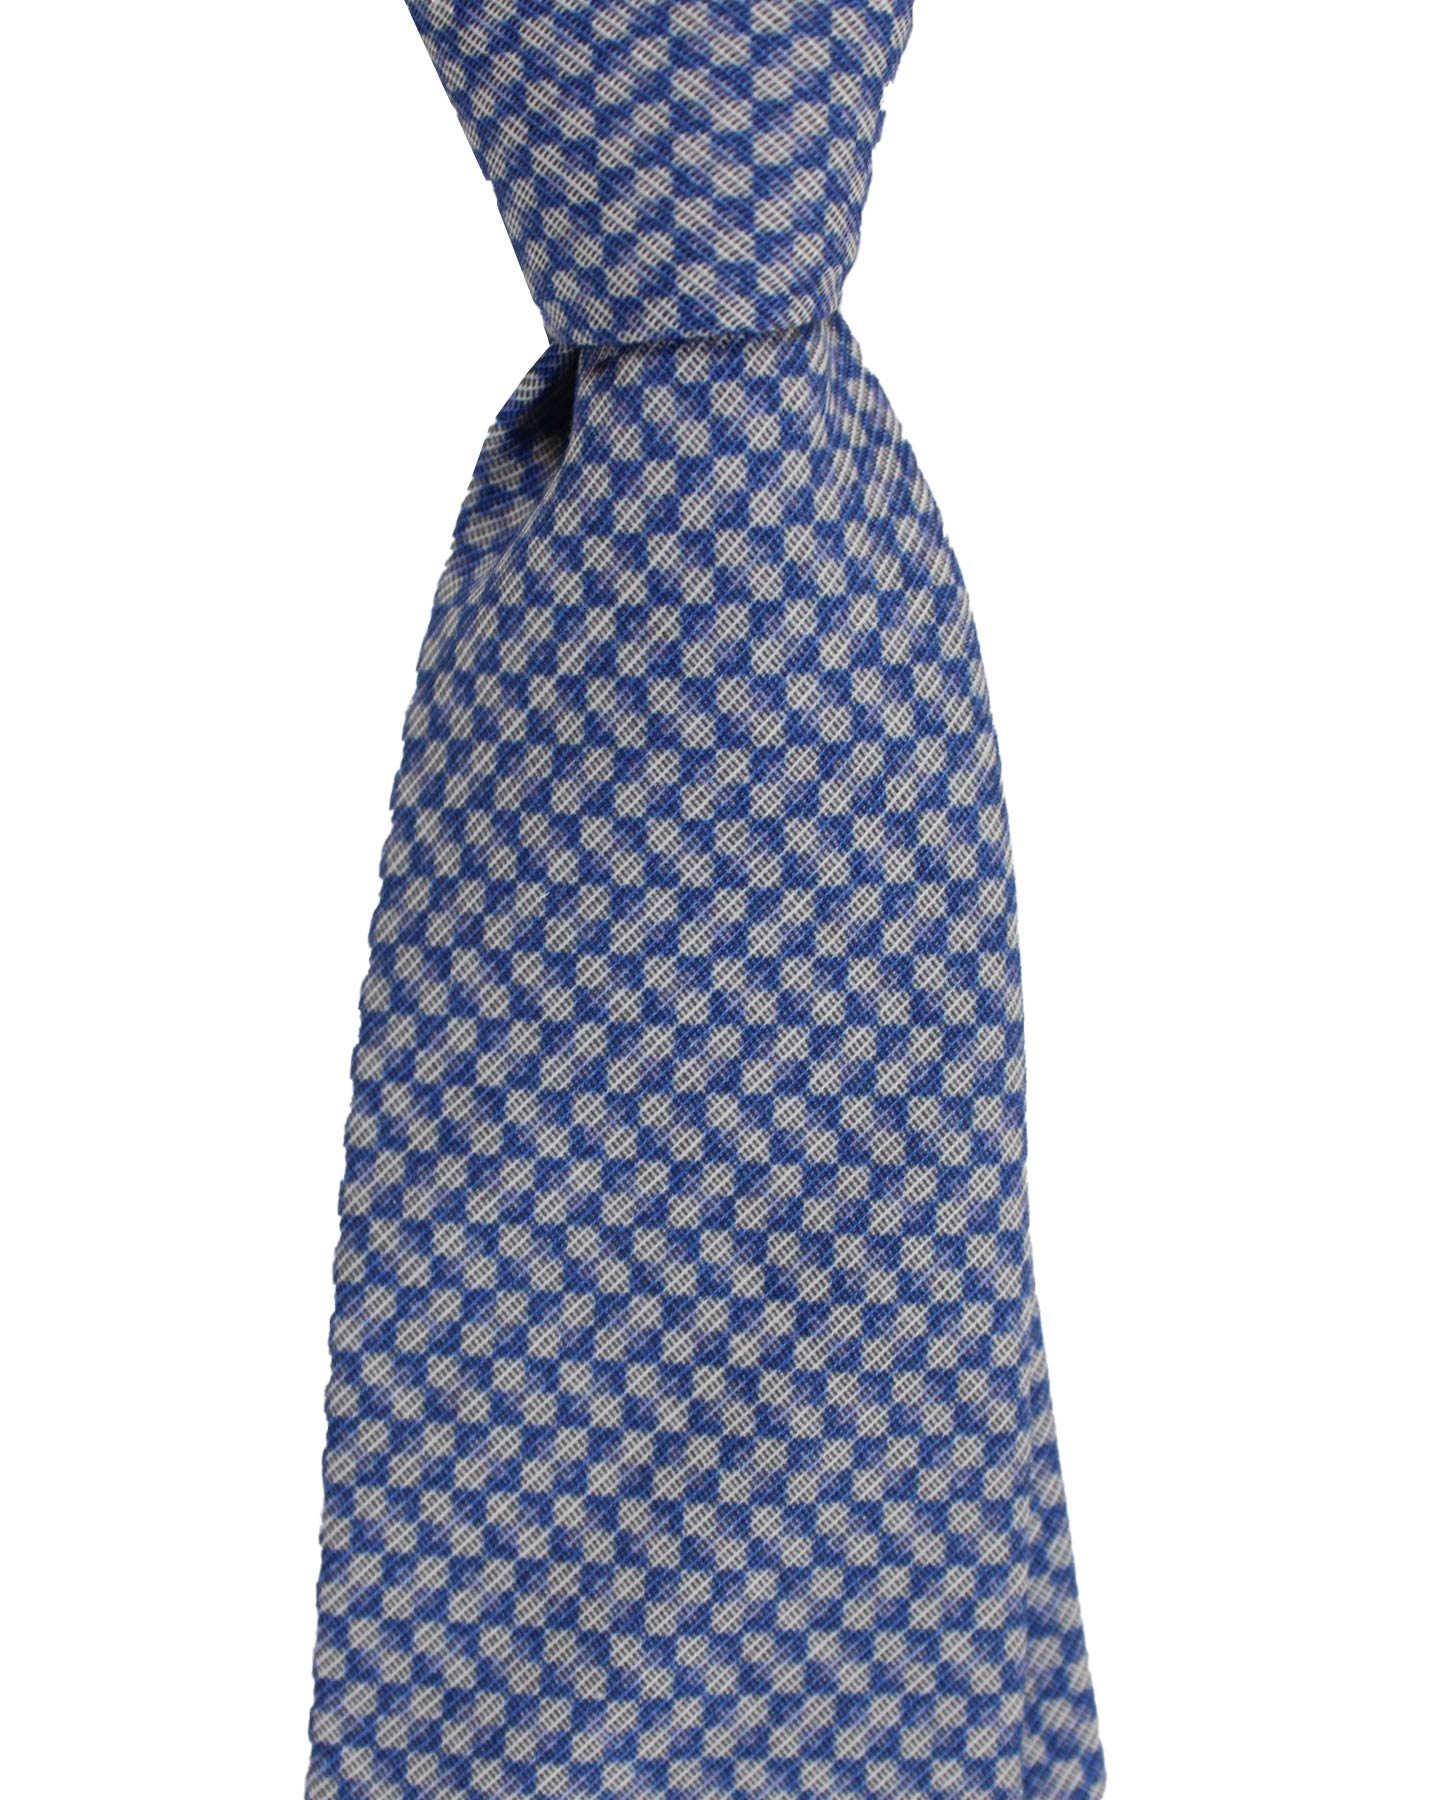 Ungaro Tie Blue Gray Geometric Design - Narrow Cut Designer Necktie